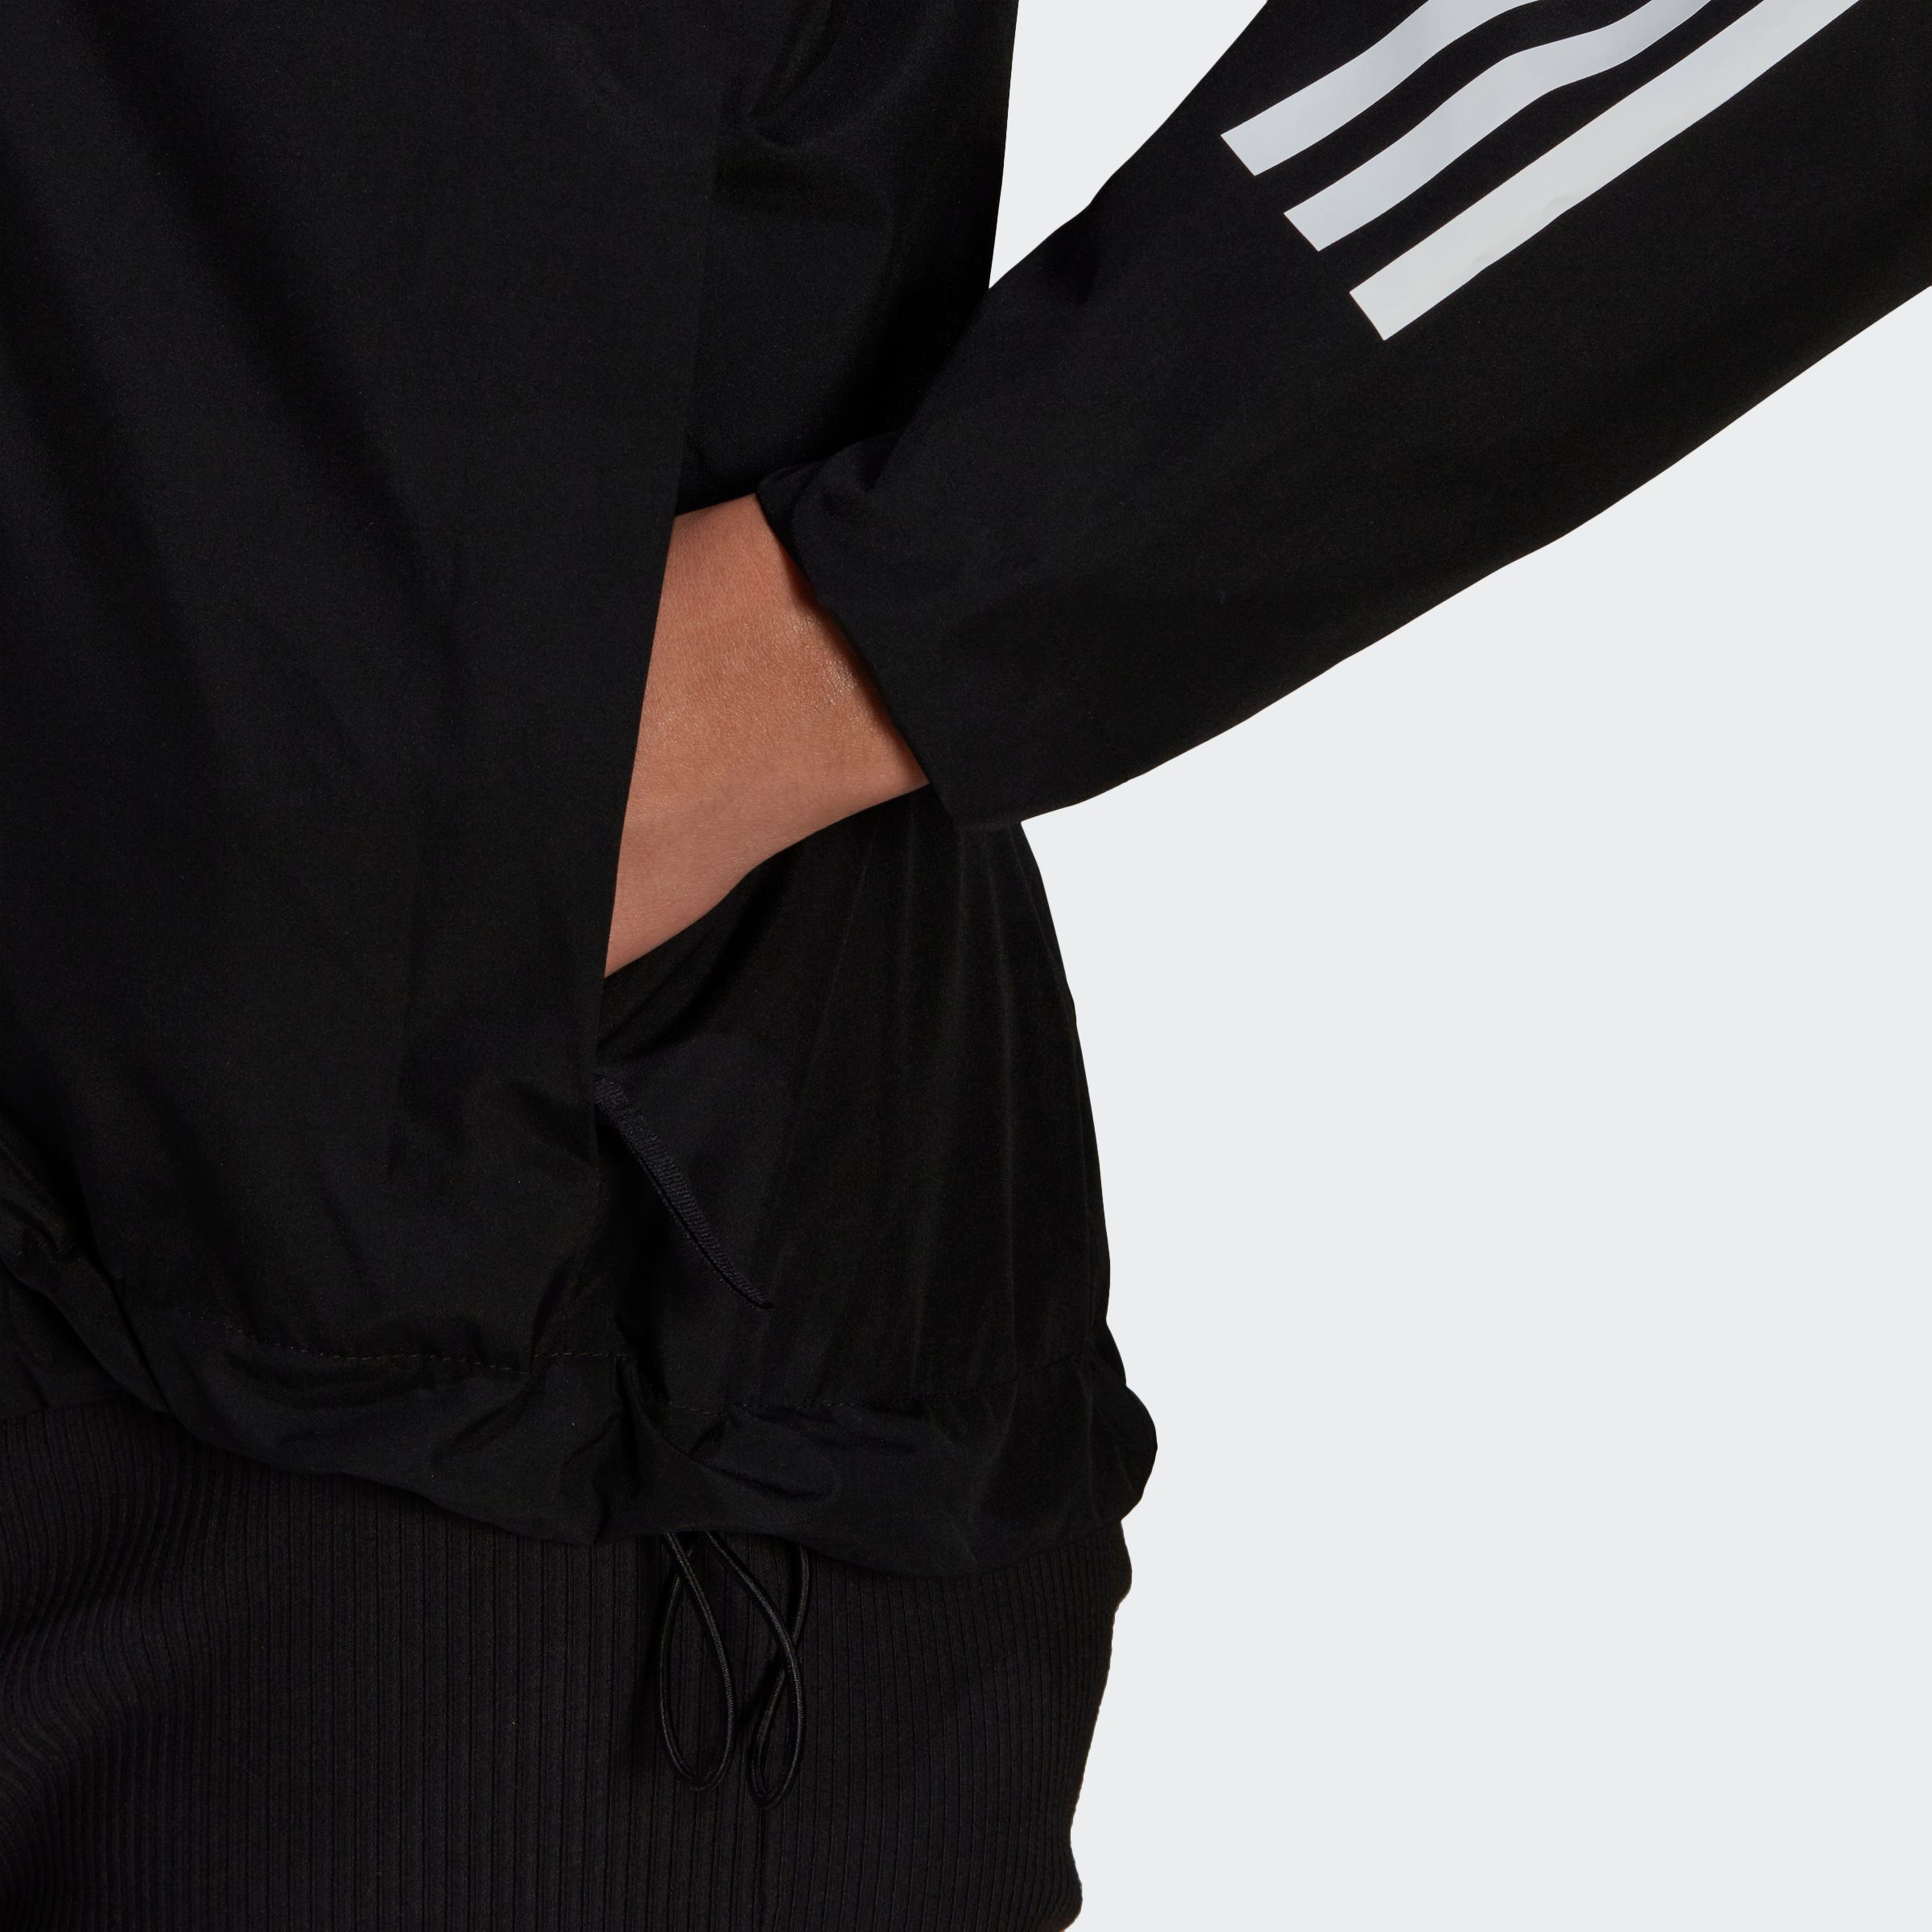 REGENJACKE Sportswear Black 3STREIFEN adidas Outdoorjacke BSC RAIN.RDY